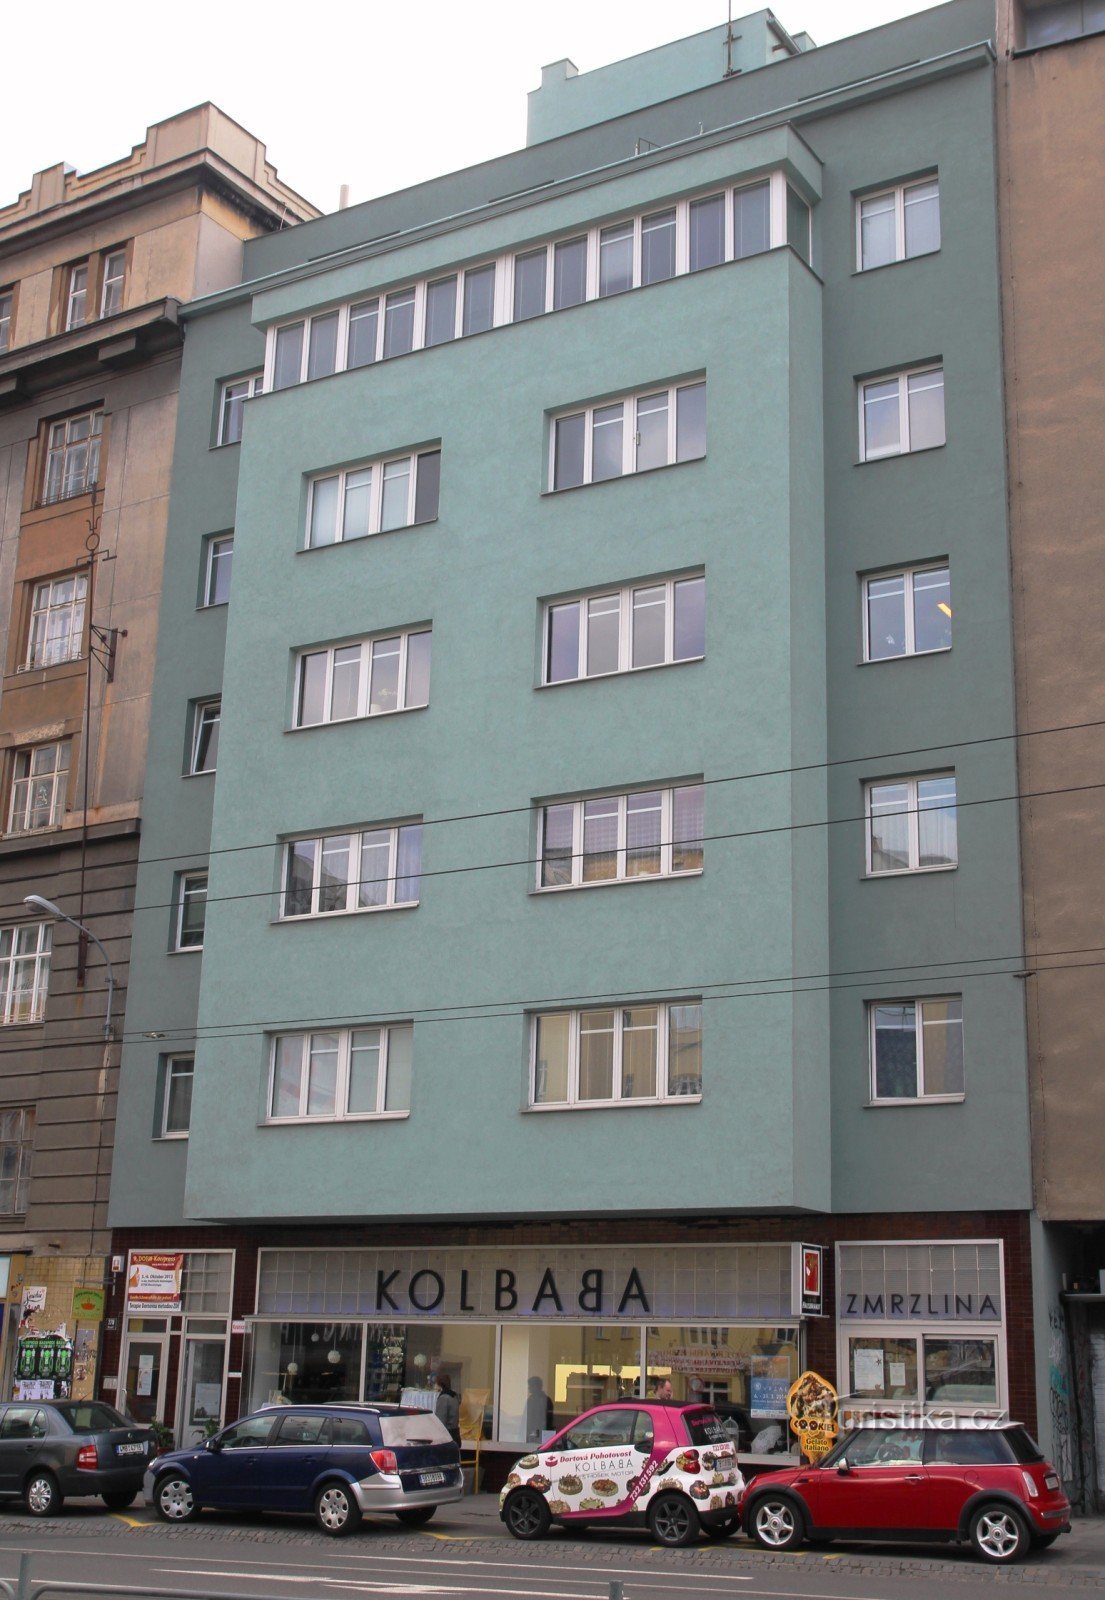 Nhà cho thuê Kolbaba trên đường Kounicová